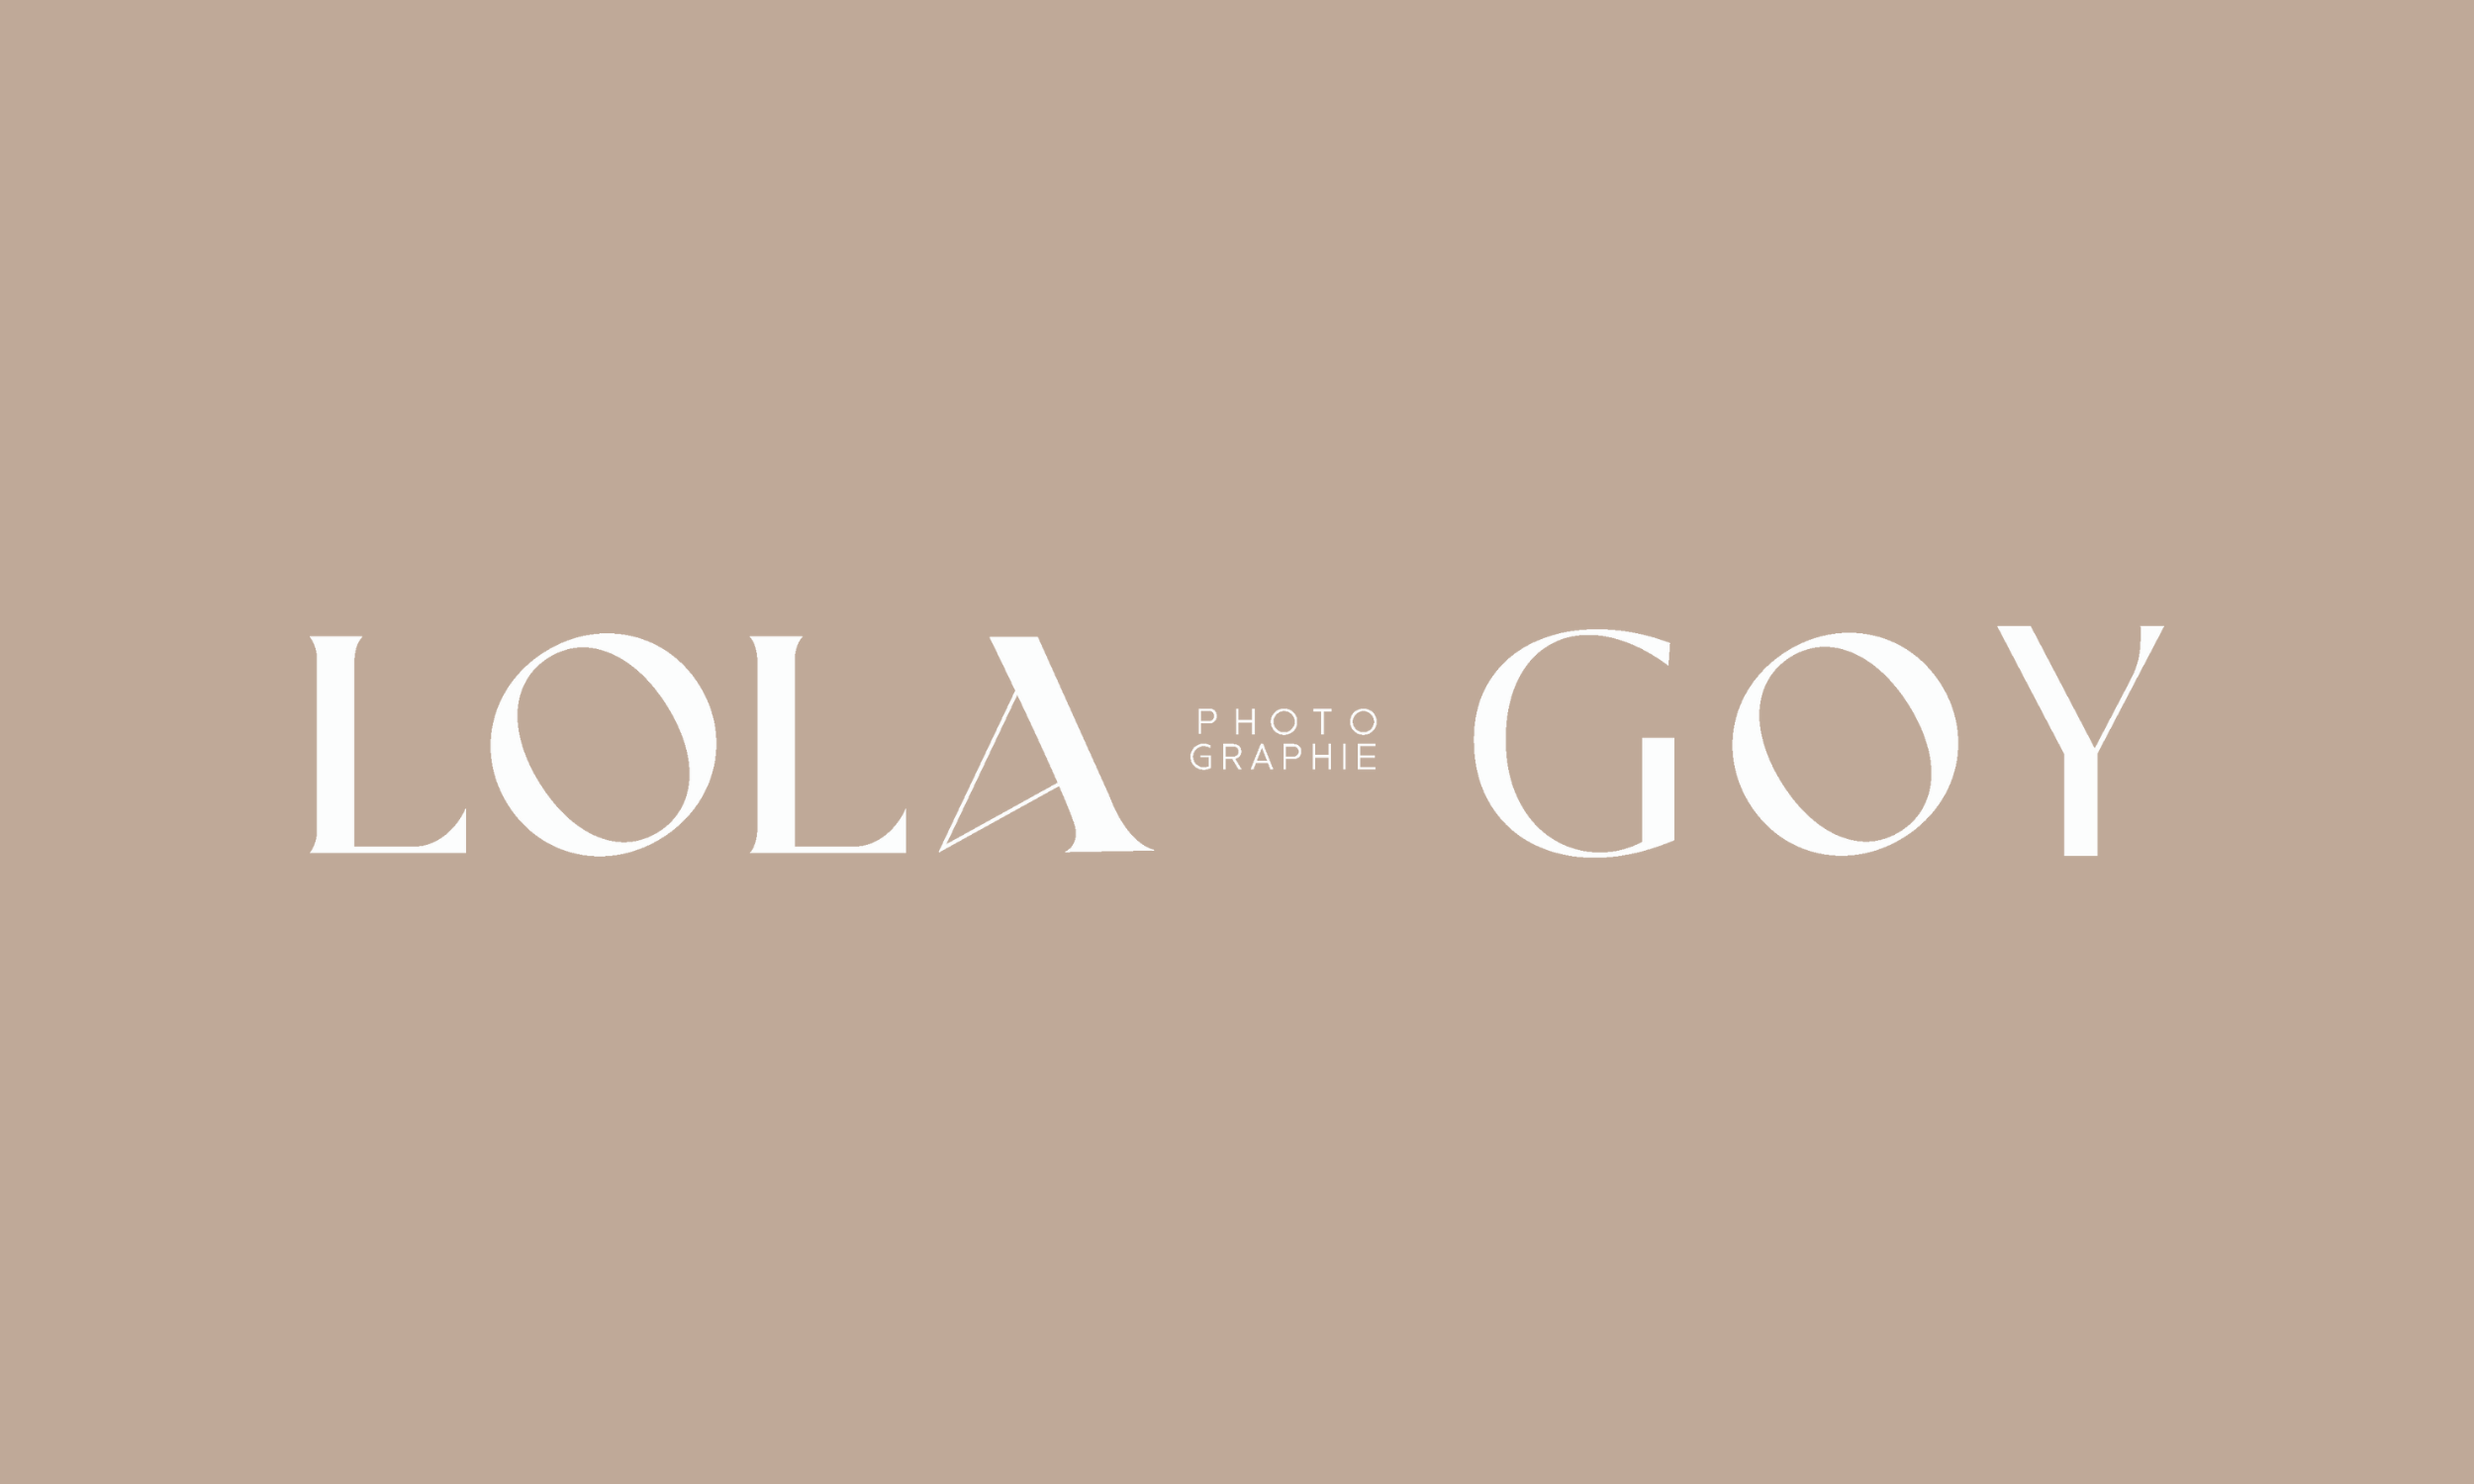 lola goy photographie logo créé par l'agence de branding et de webdesign l'agence 455